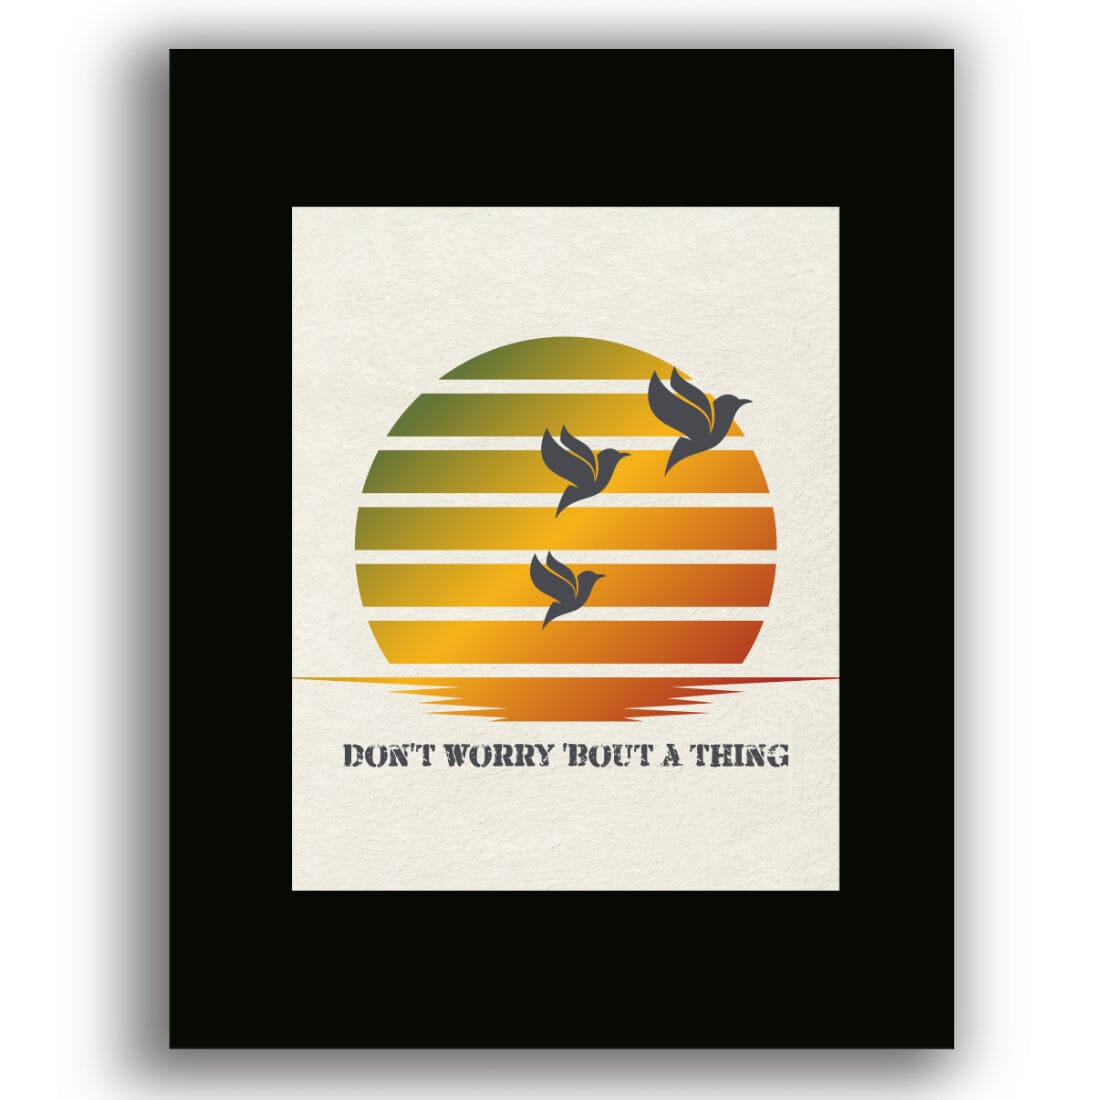 Three Little Birds by Bob Marley - Reggae Song Lyric Art Song Lyrics Art Song Lyrics Art 8x10 Black Matted Print 